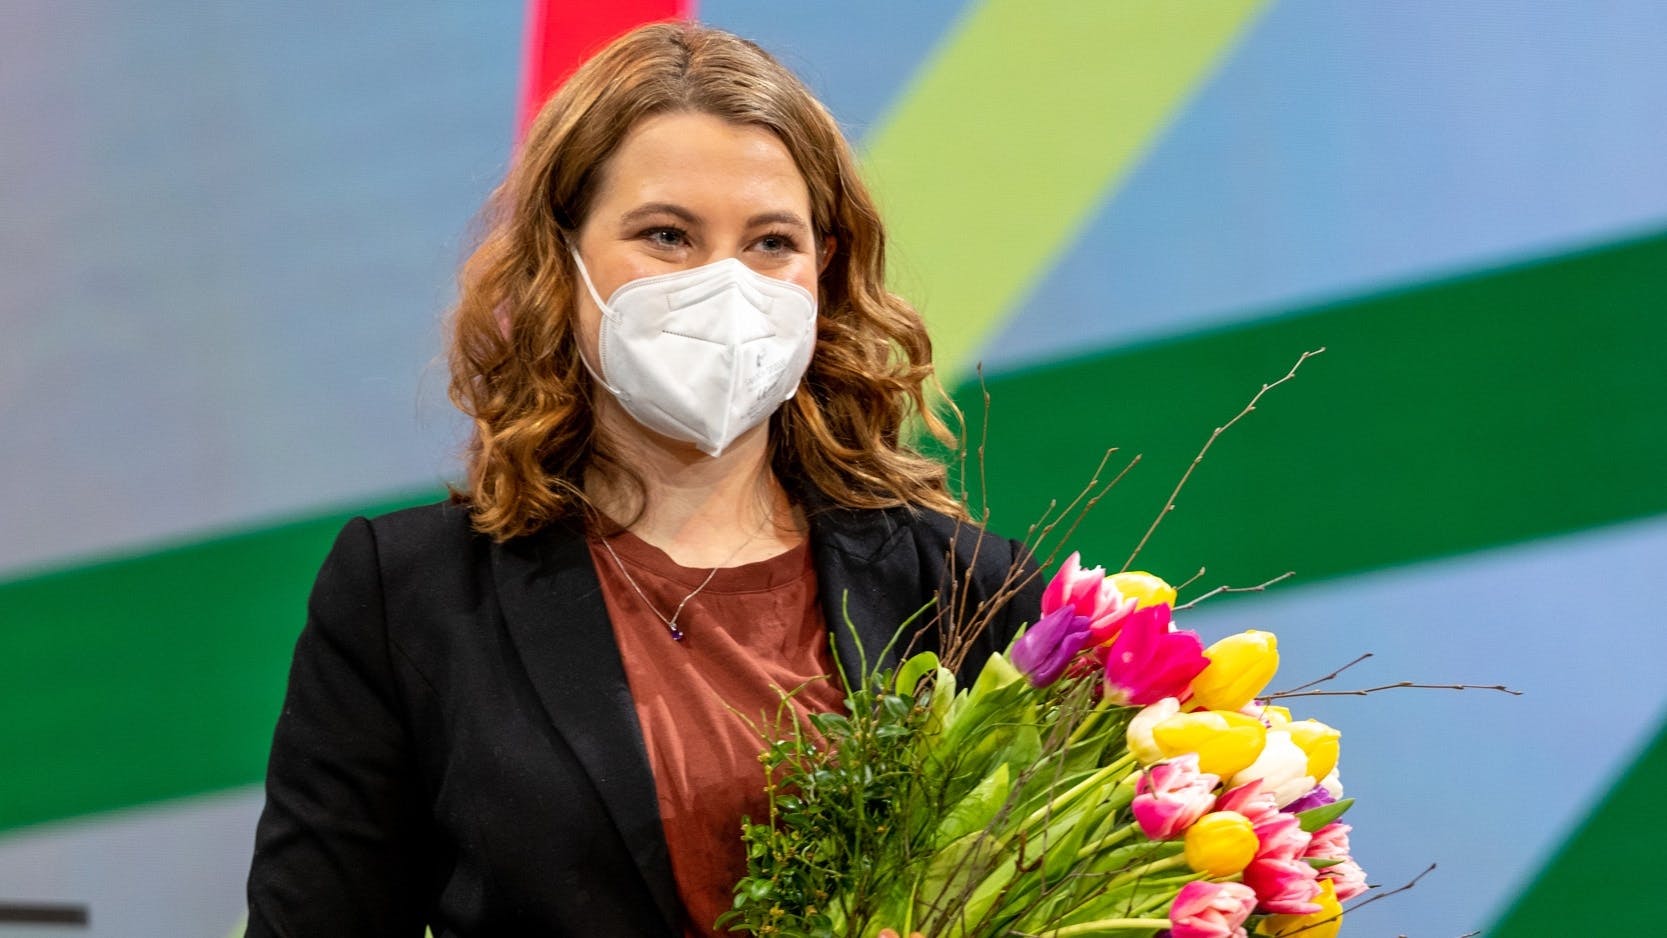 Jamila Schäfer mit Mund-Nase-Schutz und Blumenstrauß im Arm